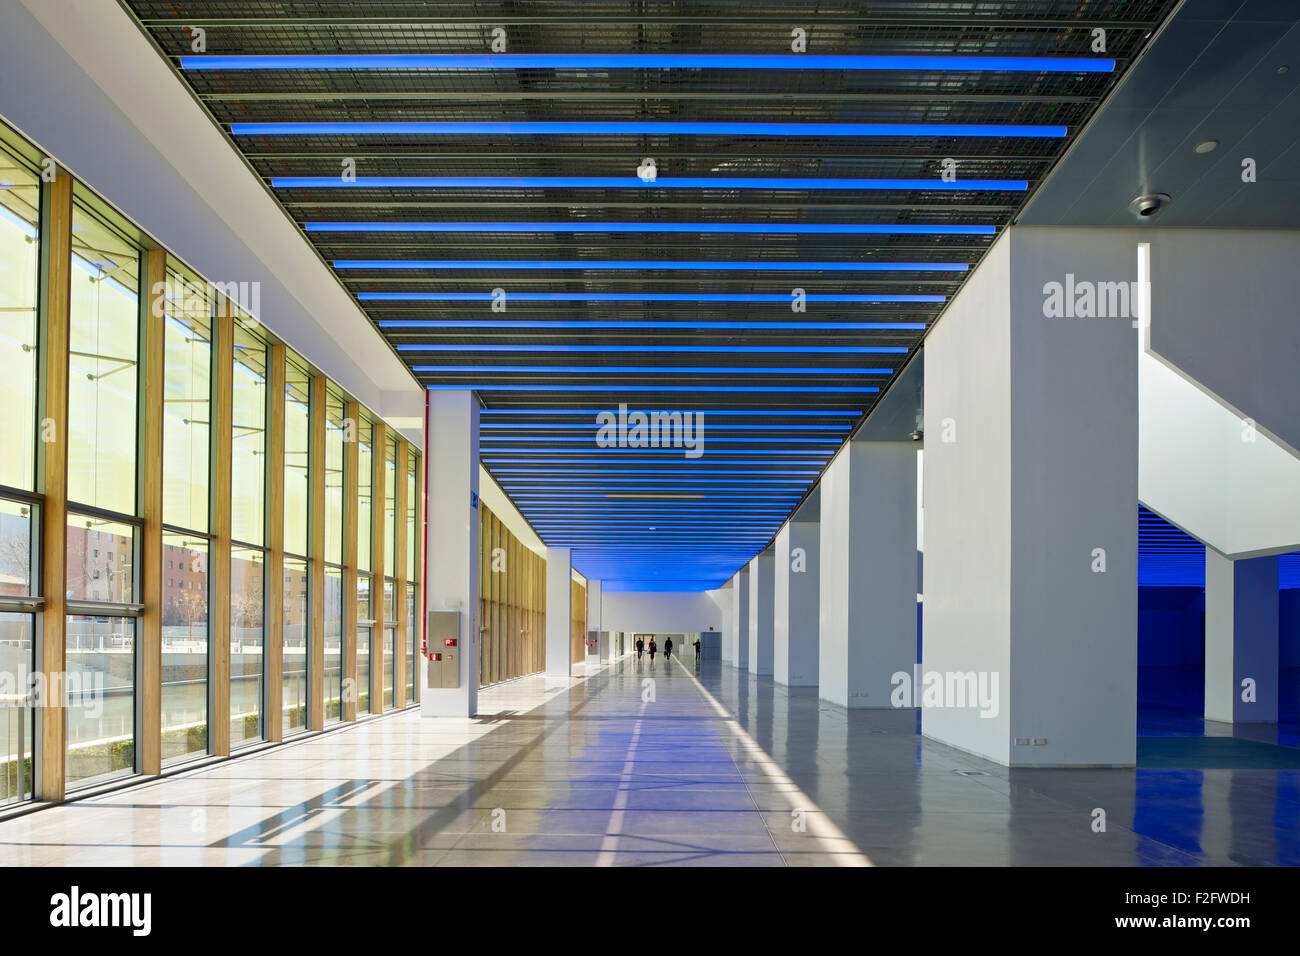 Exhibition Hall corridoio con finestra a parete. Museu del Disseny de Barcelona, Barcelona, Spagna. Architetto: MBM Arquitectes, 2013. Foto Stock